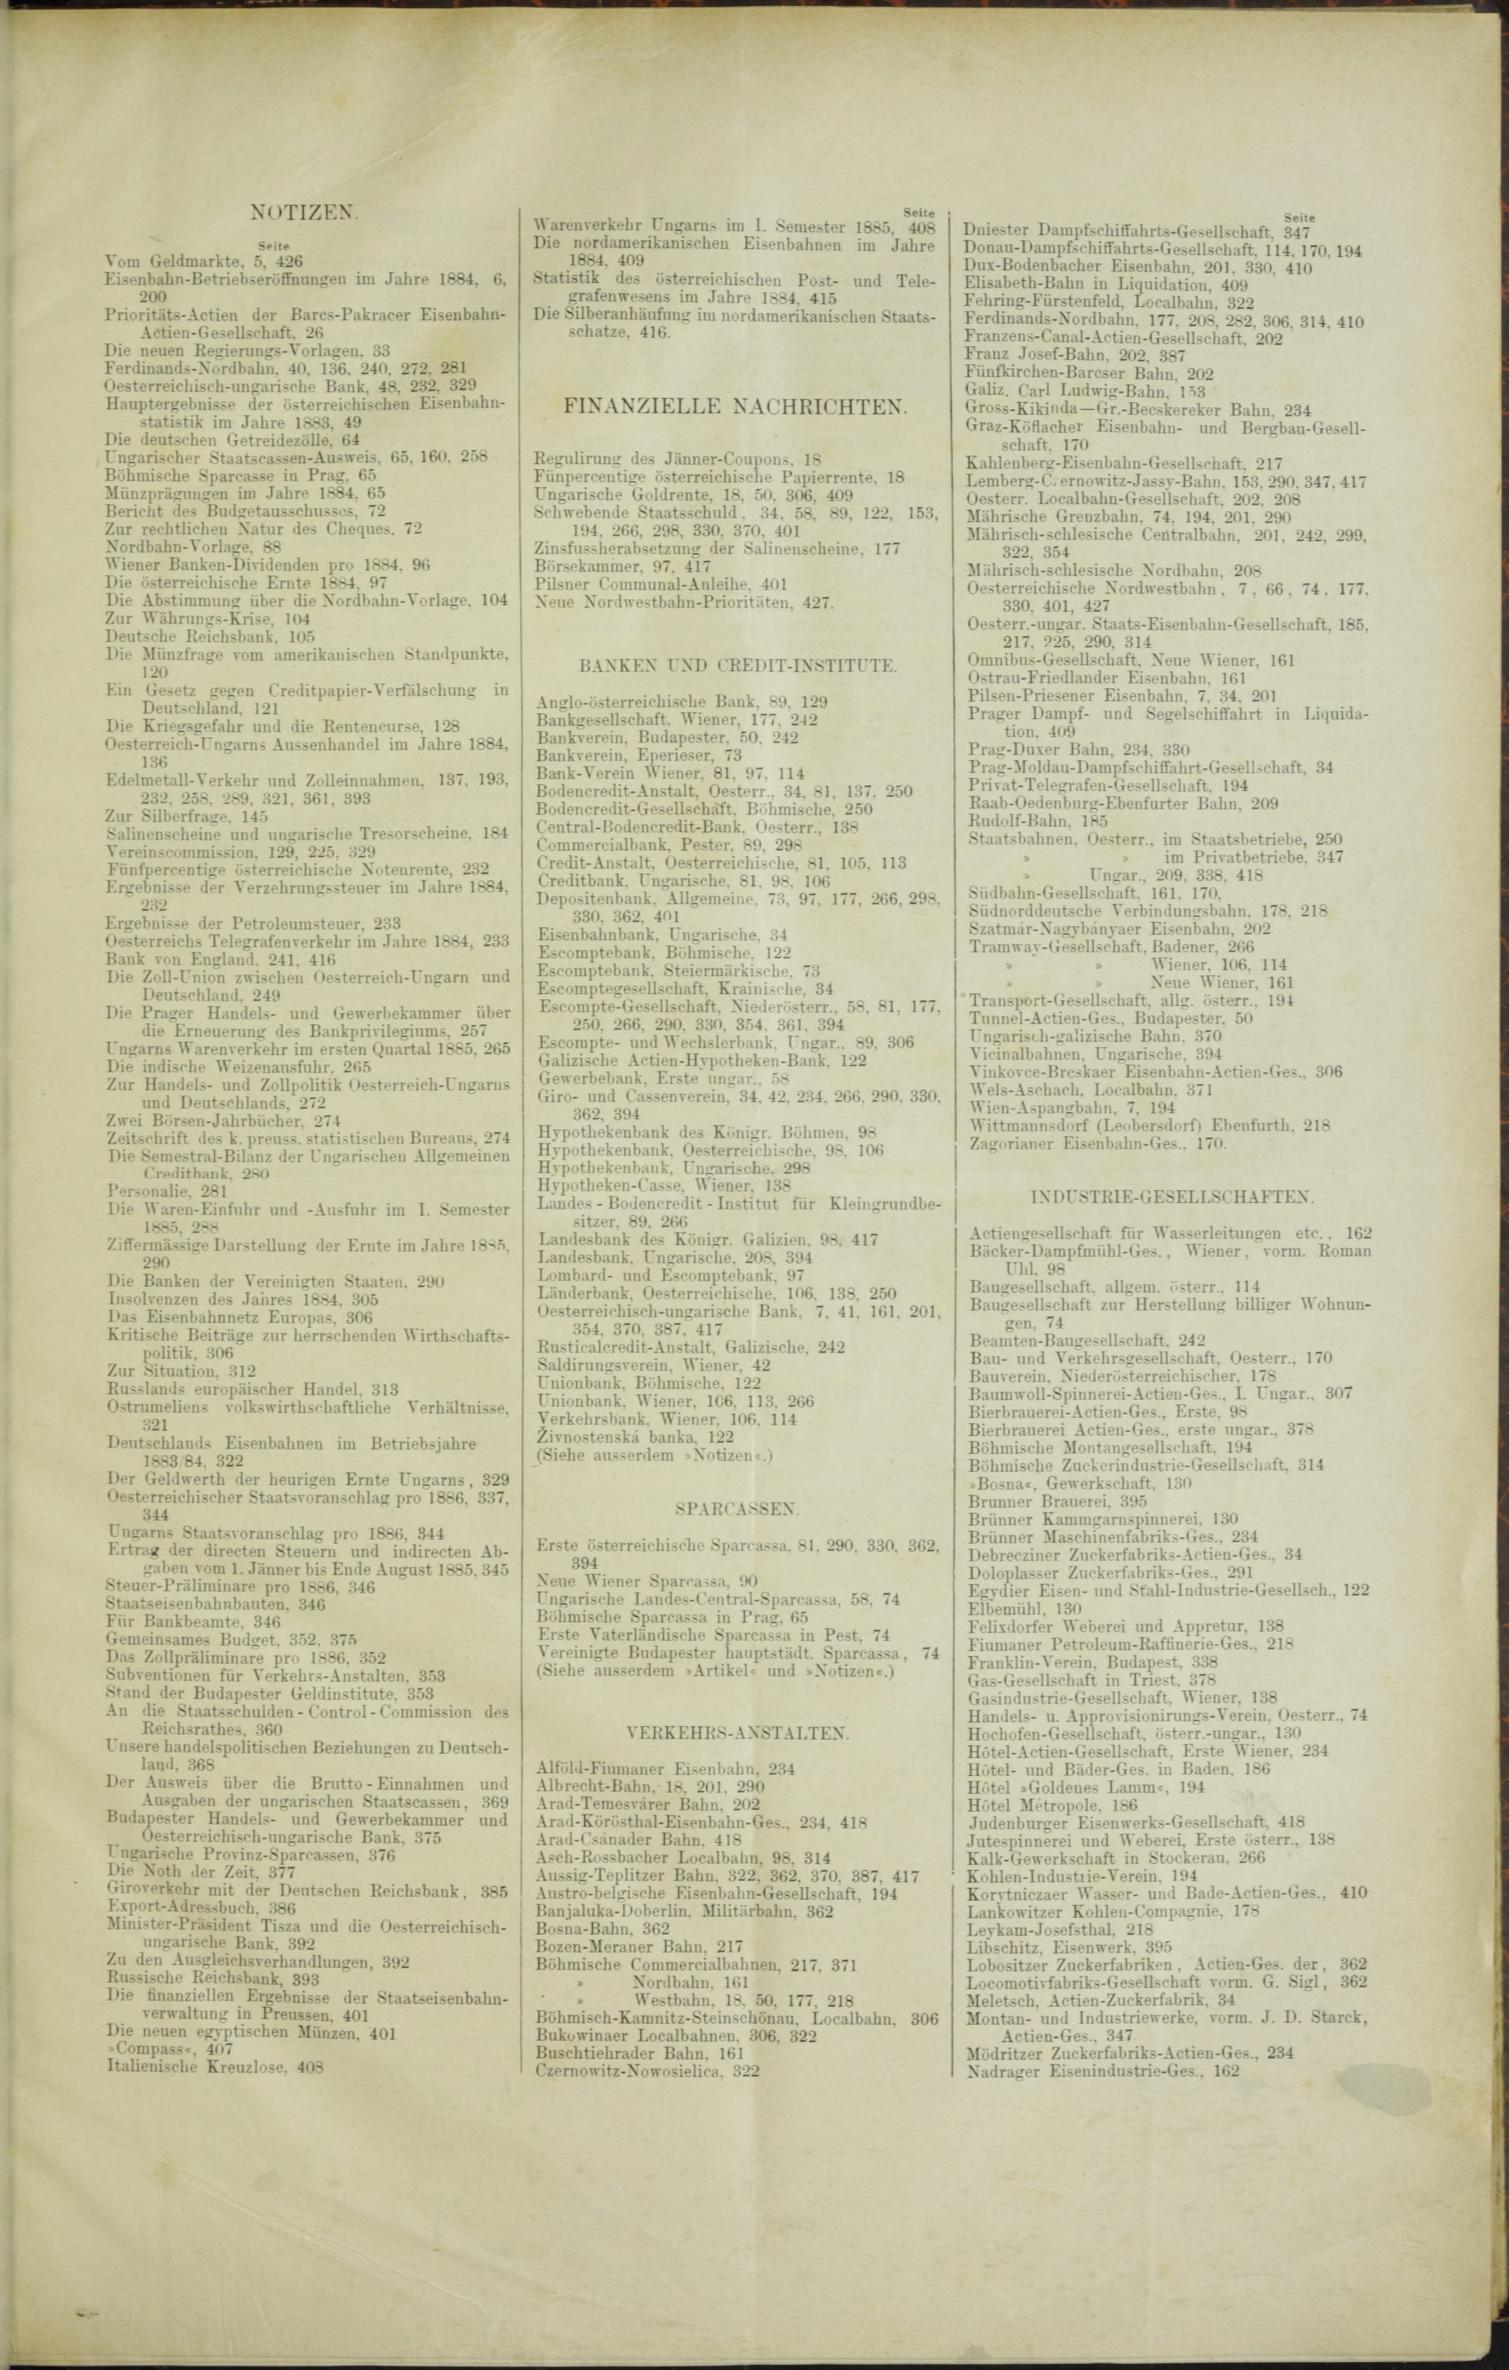 Der Tresor 12.03.1885 - Seite 11